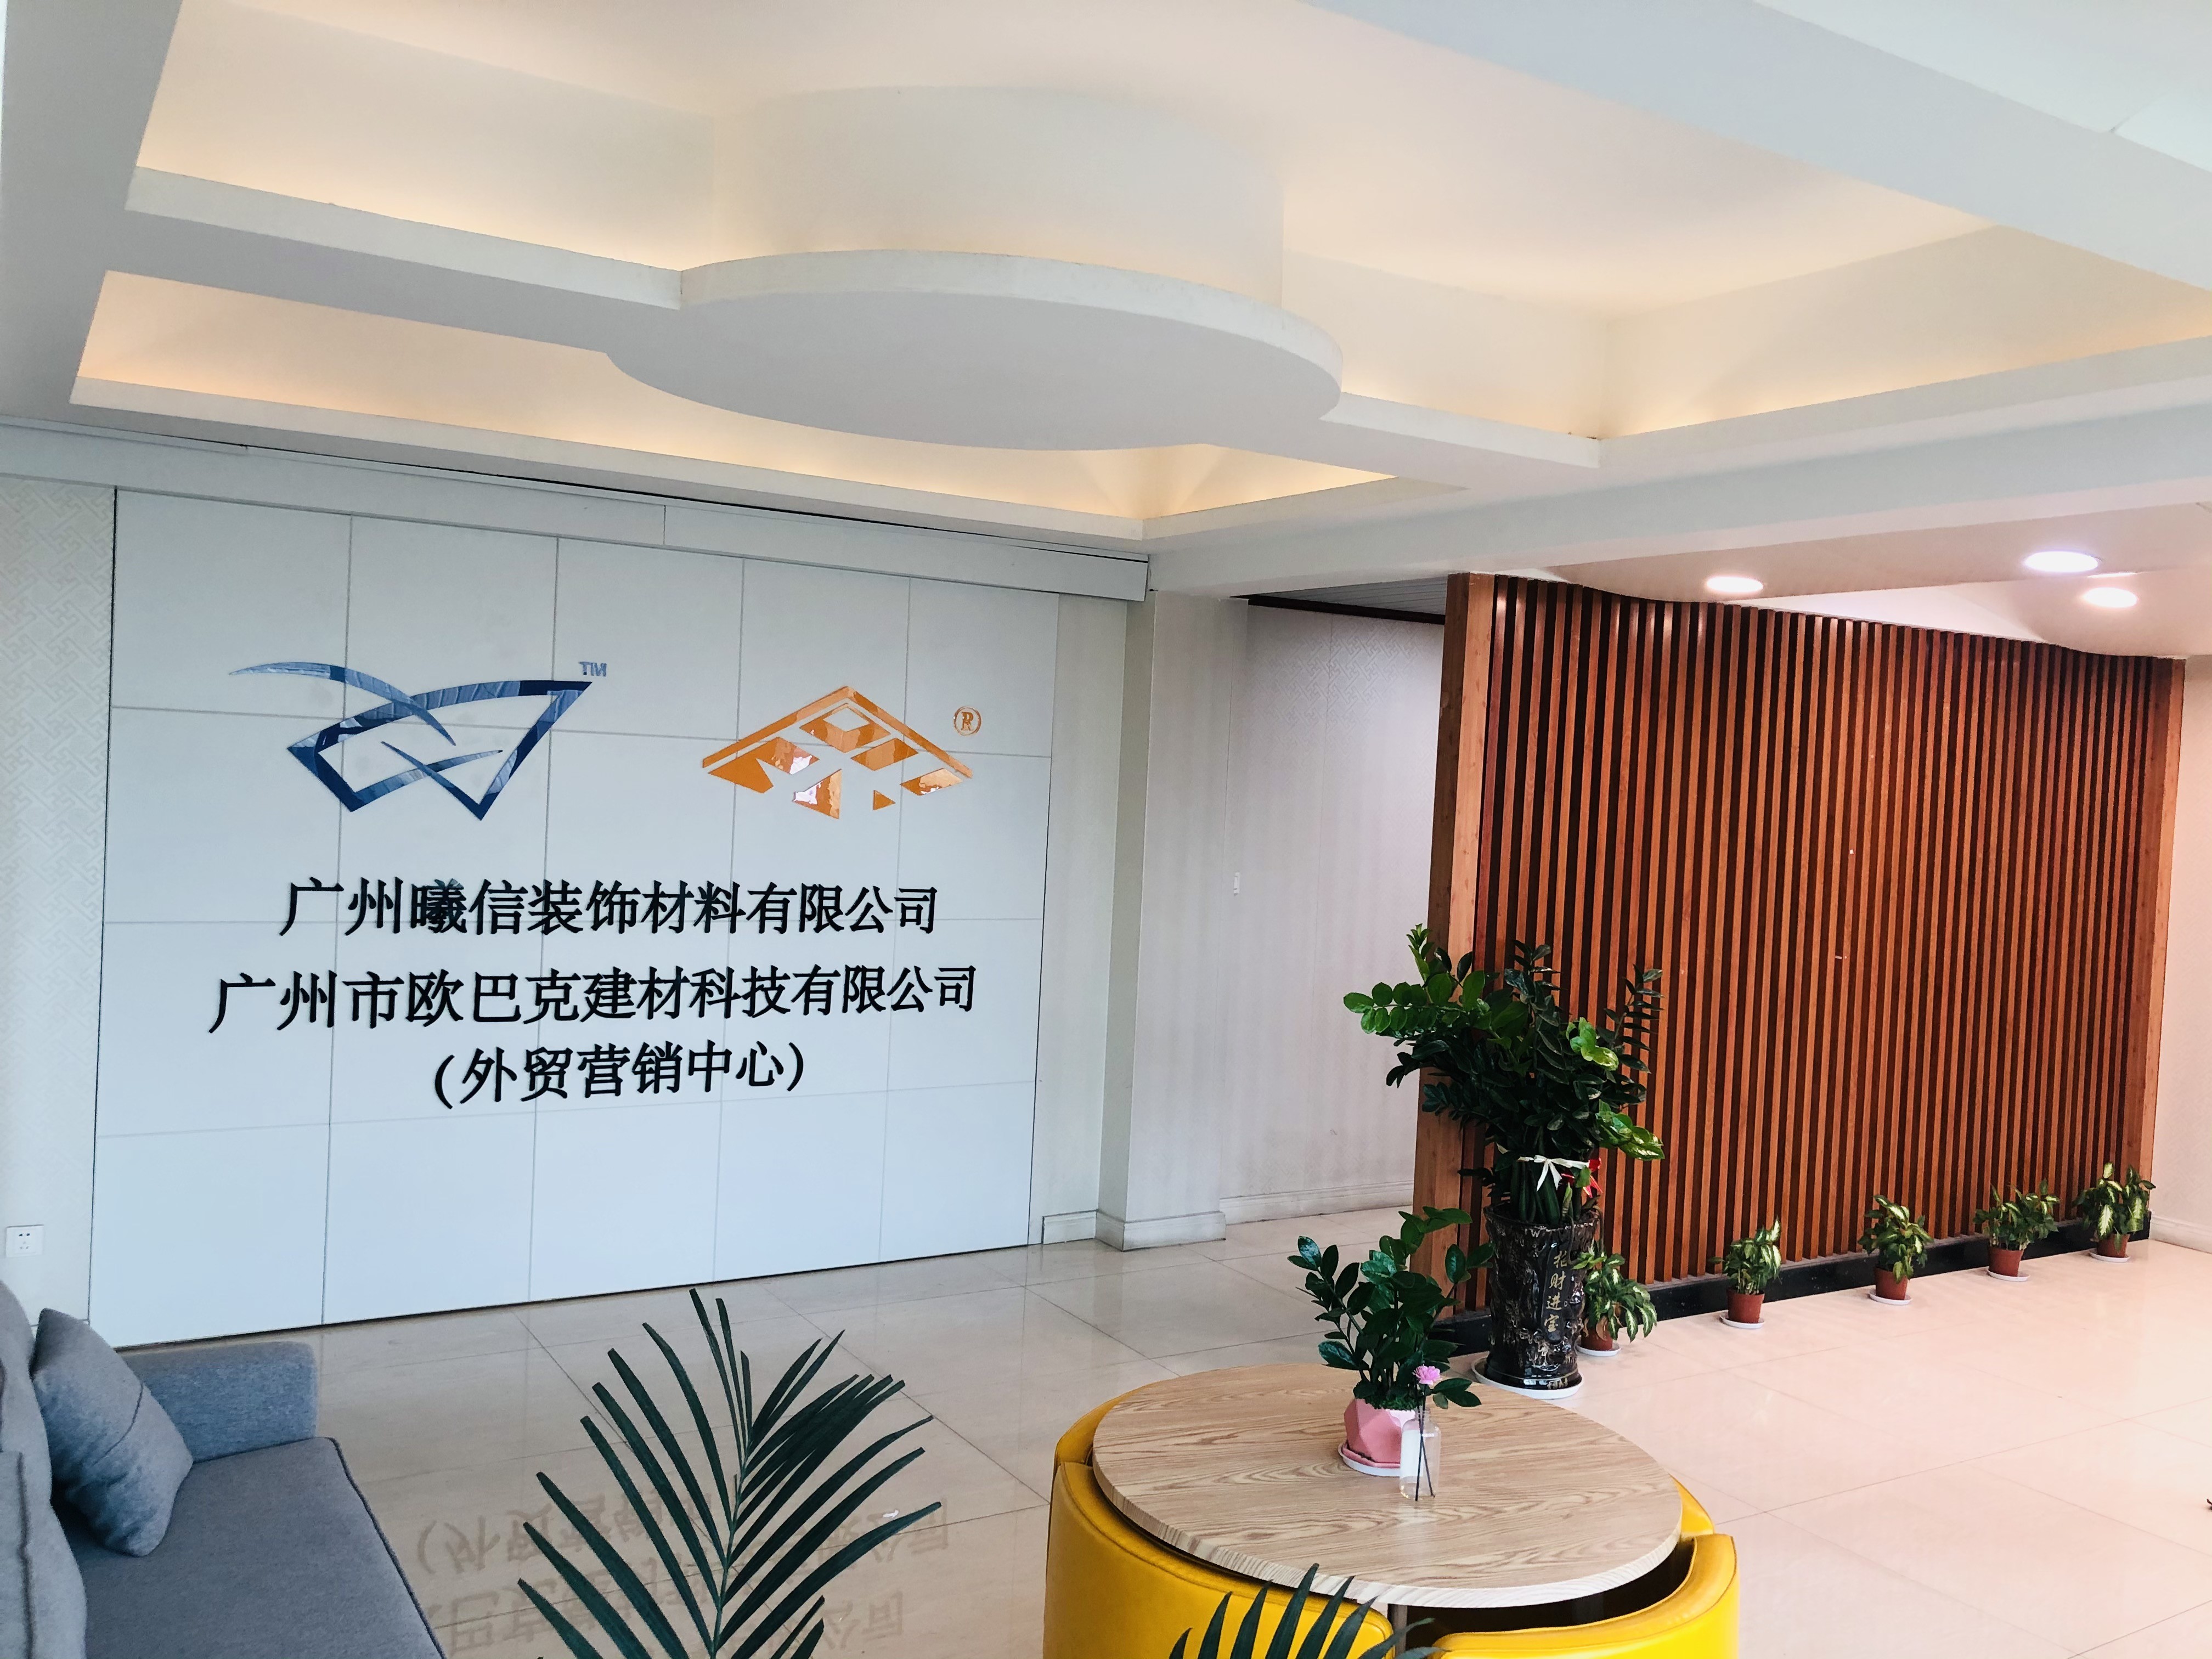 চীন Guangzhou Season Decoration Materials Co., Ltd.